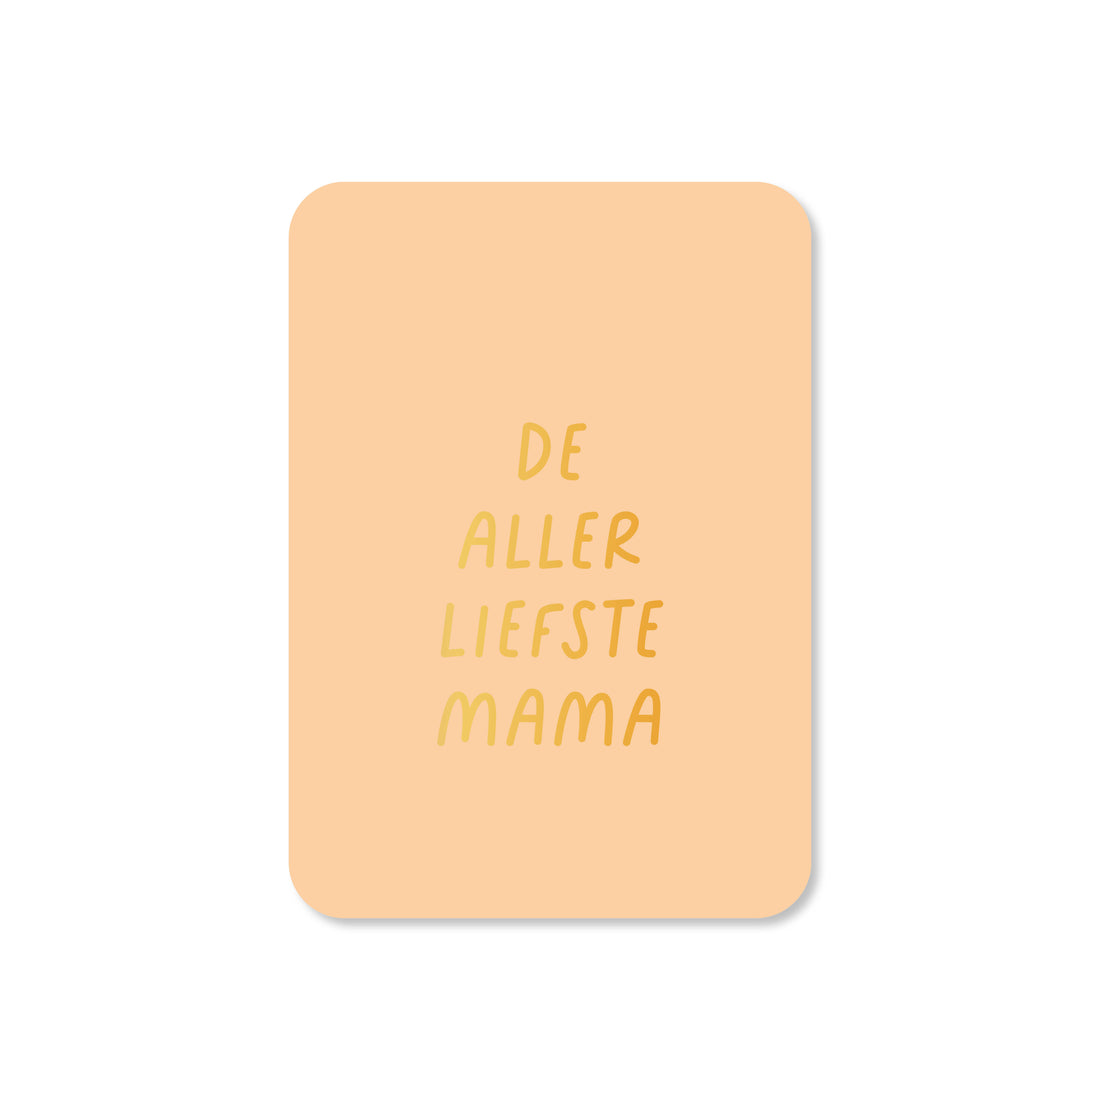 Minikaart Allerliefste mama (met goudfolie)